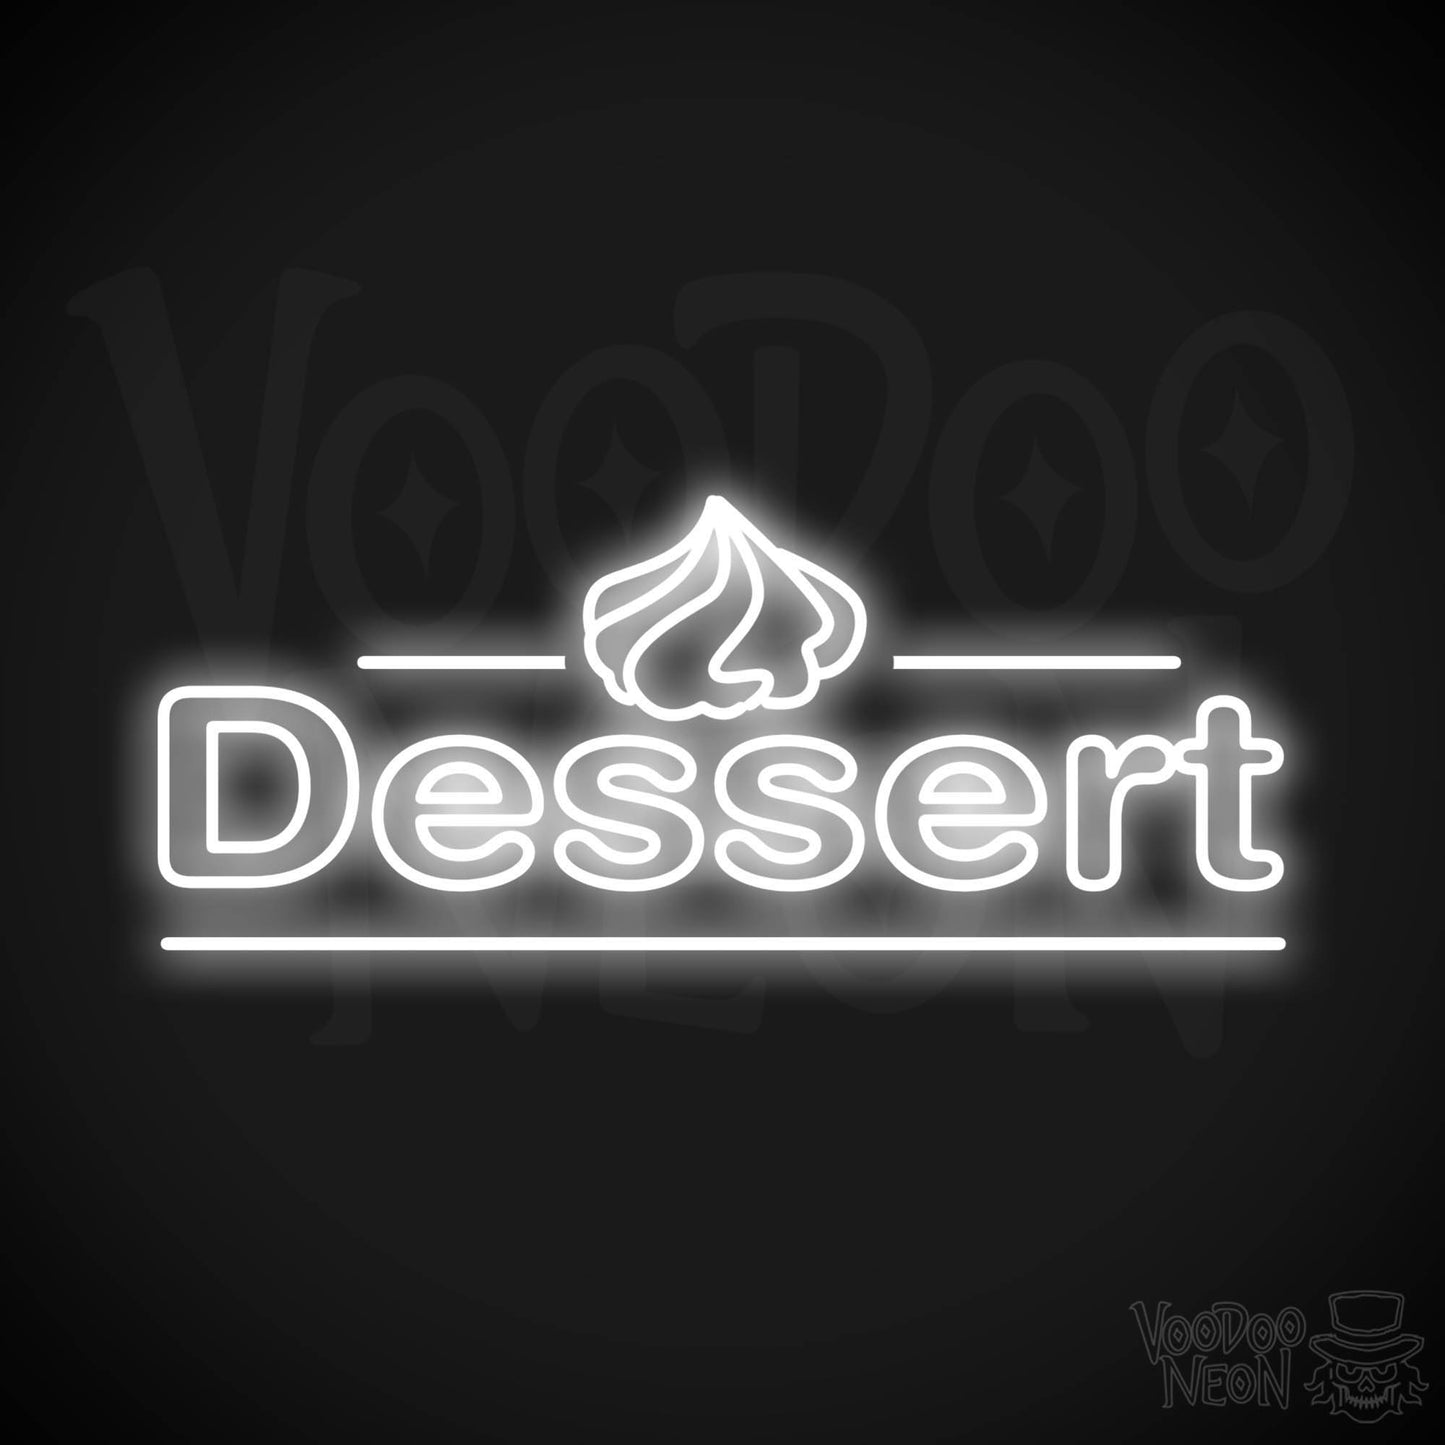 Dessert LED Neon - White